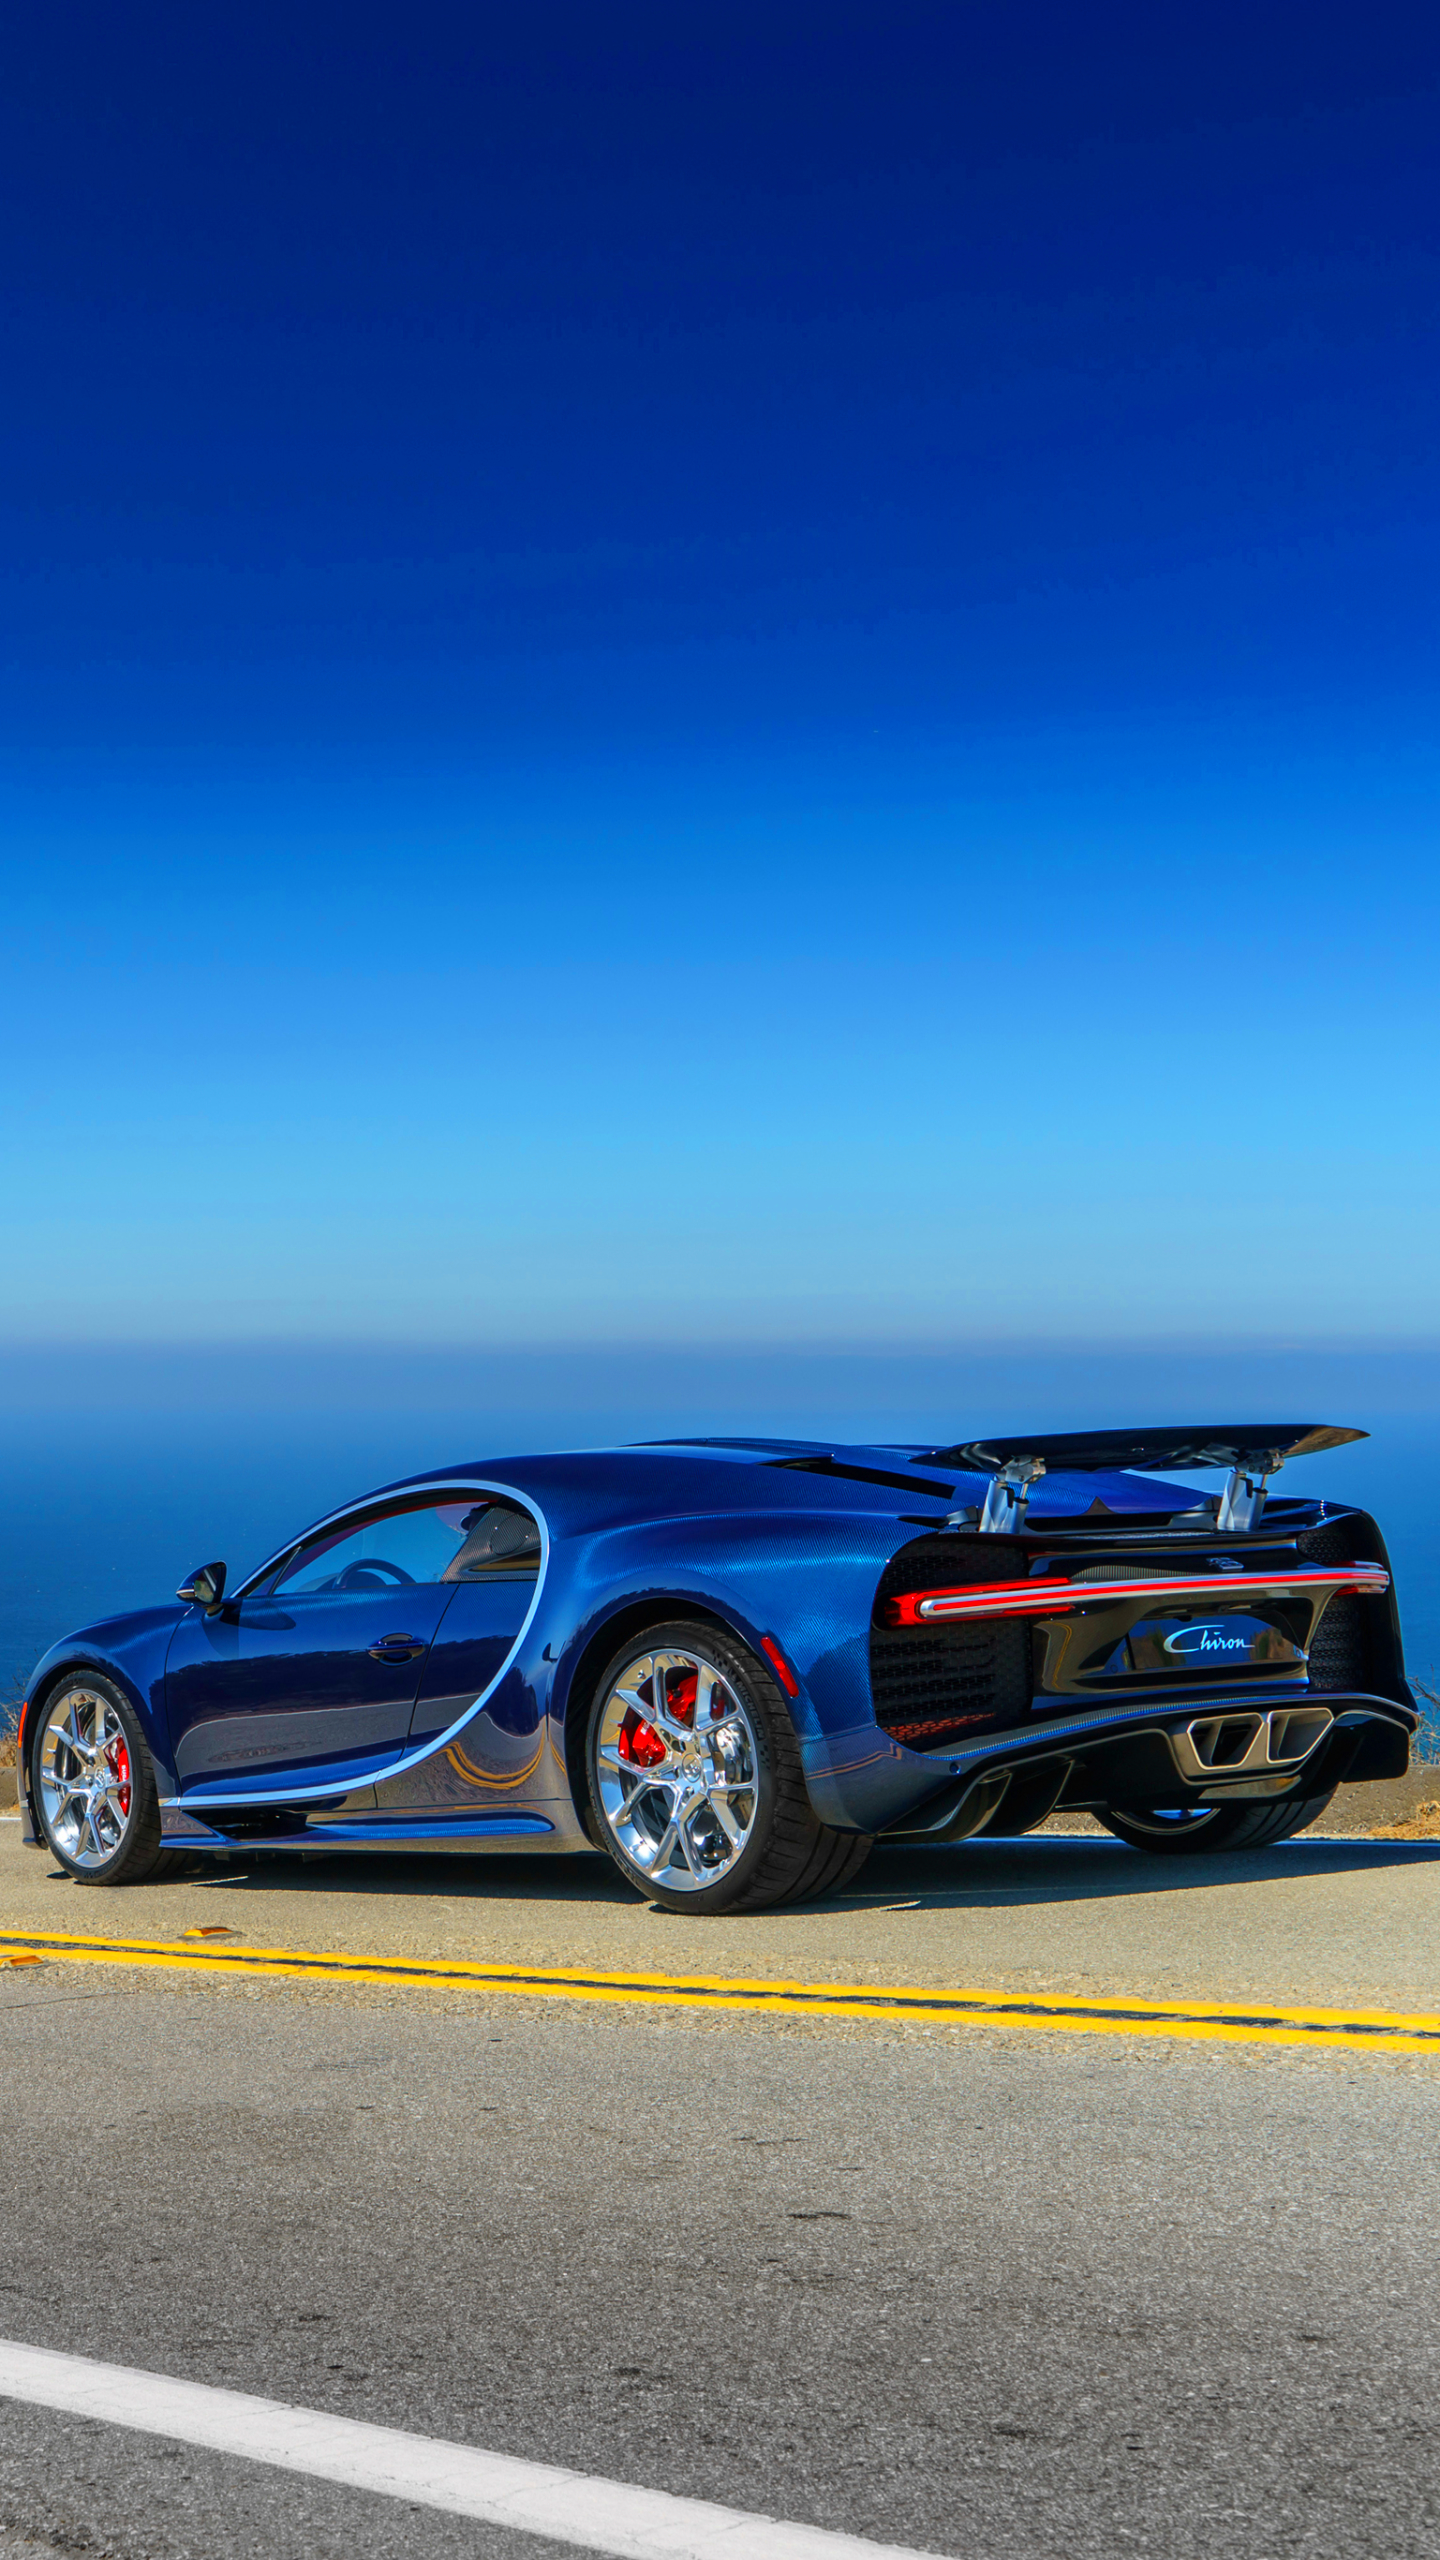 Descarga gratuita de fondo de pantalla para móvil de Bugatti, Coche, Superdeportivo, Vehículo, Bugatti Quirón, Vehículos.